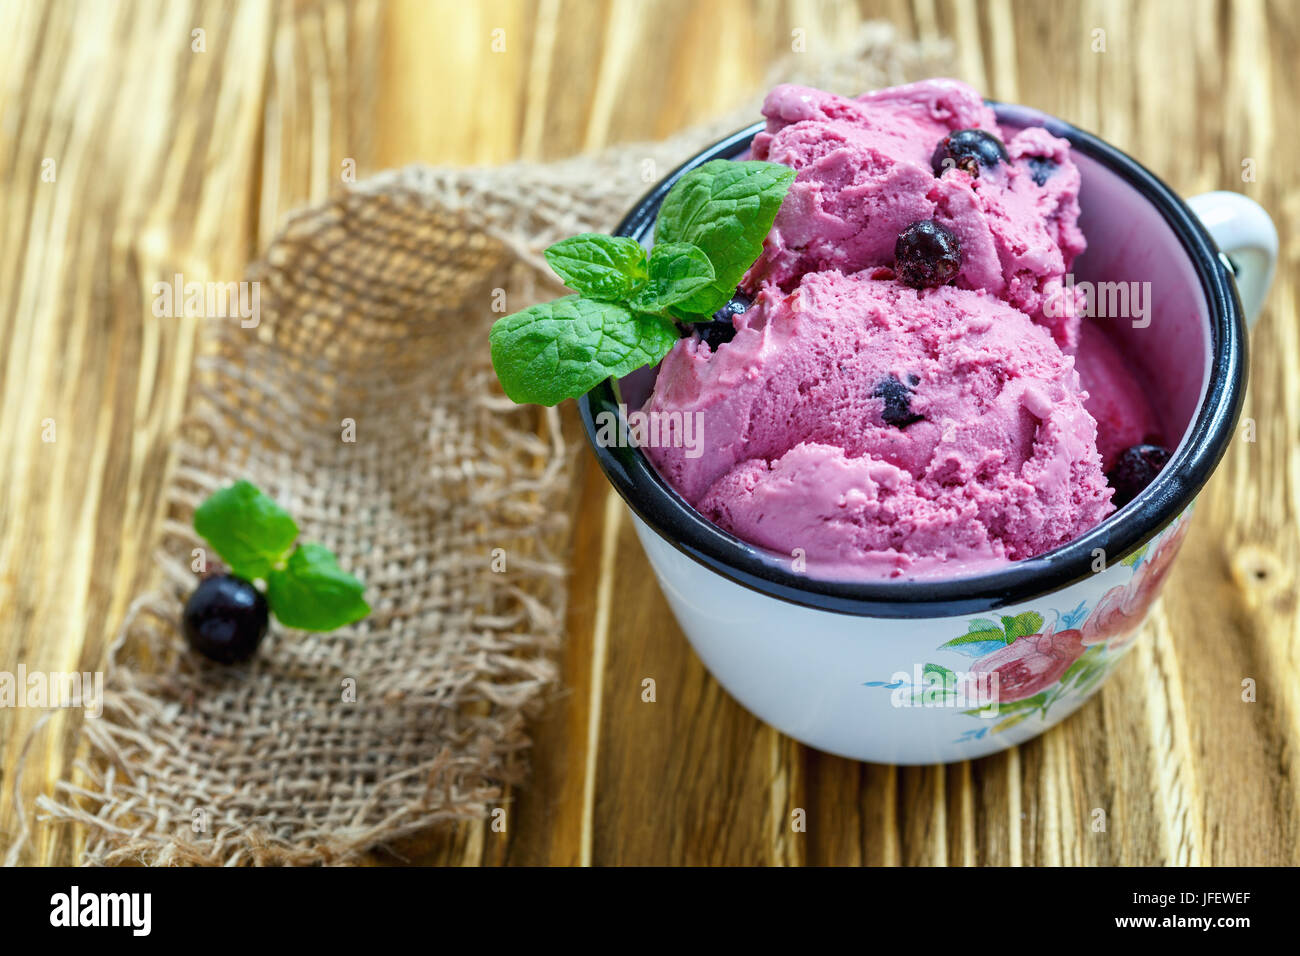 Coppa smaltato con fatti in casa berry ice cream. Foto Stock